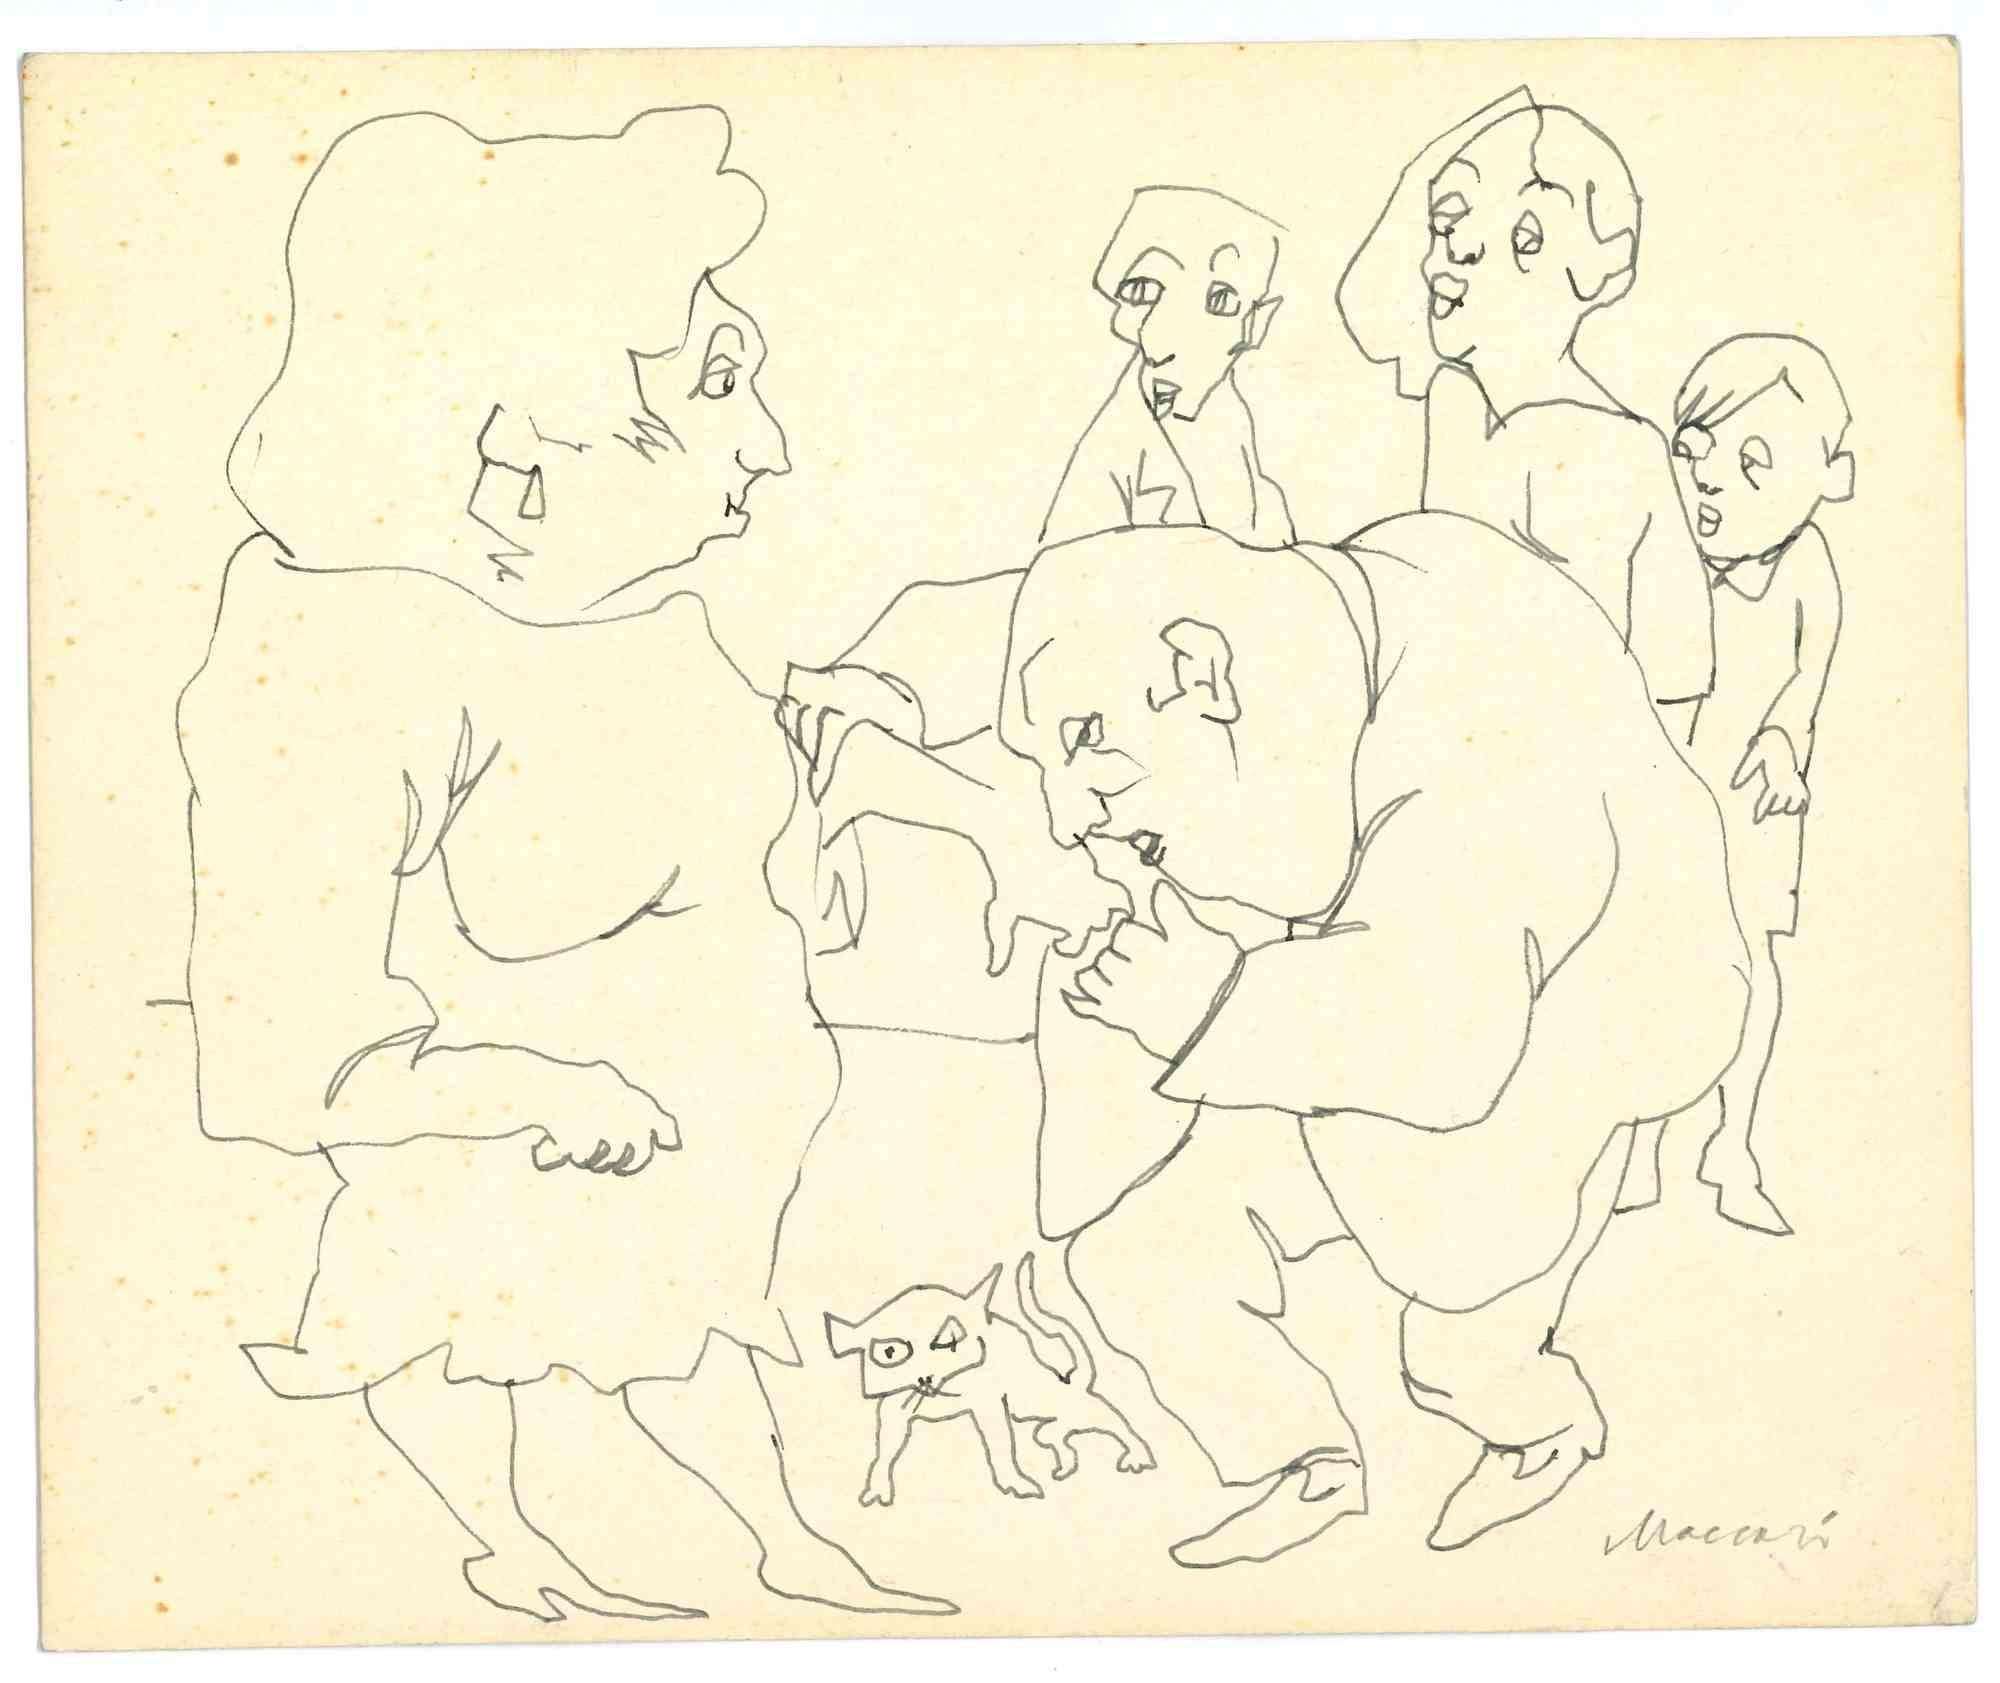 Figuren ist eine Tuschezeichnung von Mino Maccari (1924-1989) aus der Mitte des 20. Jahrhunderts.

Handsigniert.

Guter Zustand mit leichten Stockflecken.

Mino Maccari (Siena, 1924-Rom, 16. Juni 1989) war ein italienischer Schriftsteller, Maler,